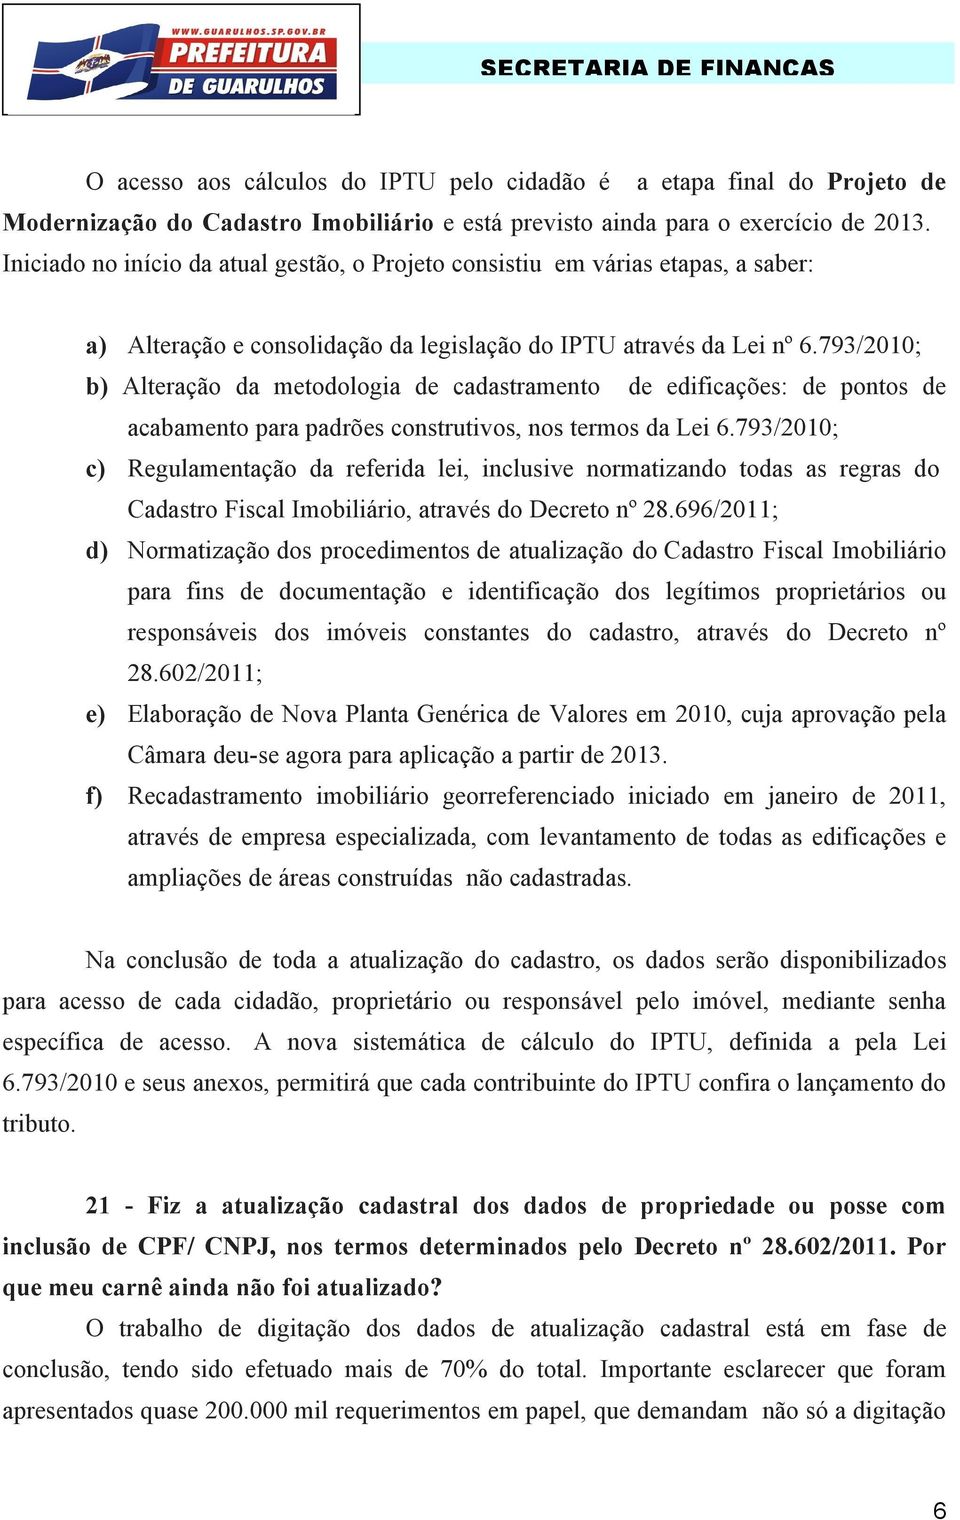 793/2010; b) Alteração da metodologia de cadastramento de edificações: de pontos de acabamento para padrões construtivos, nos termos da Lei 6.